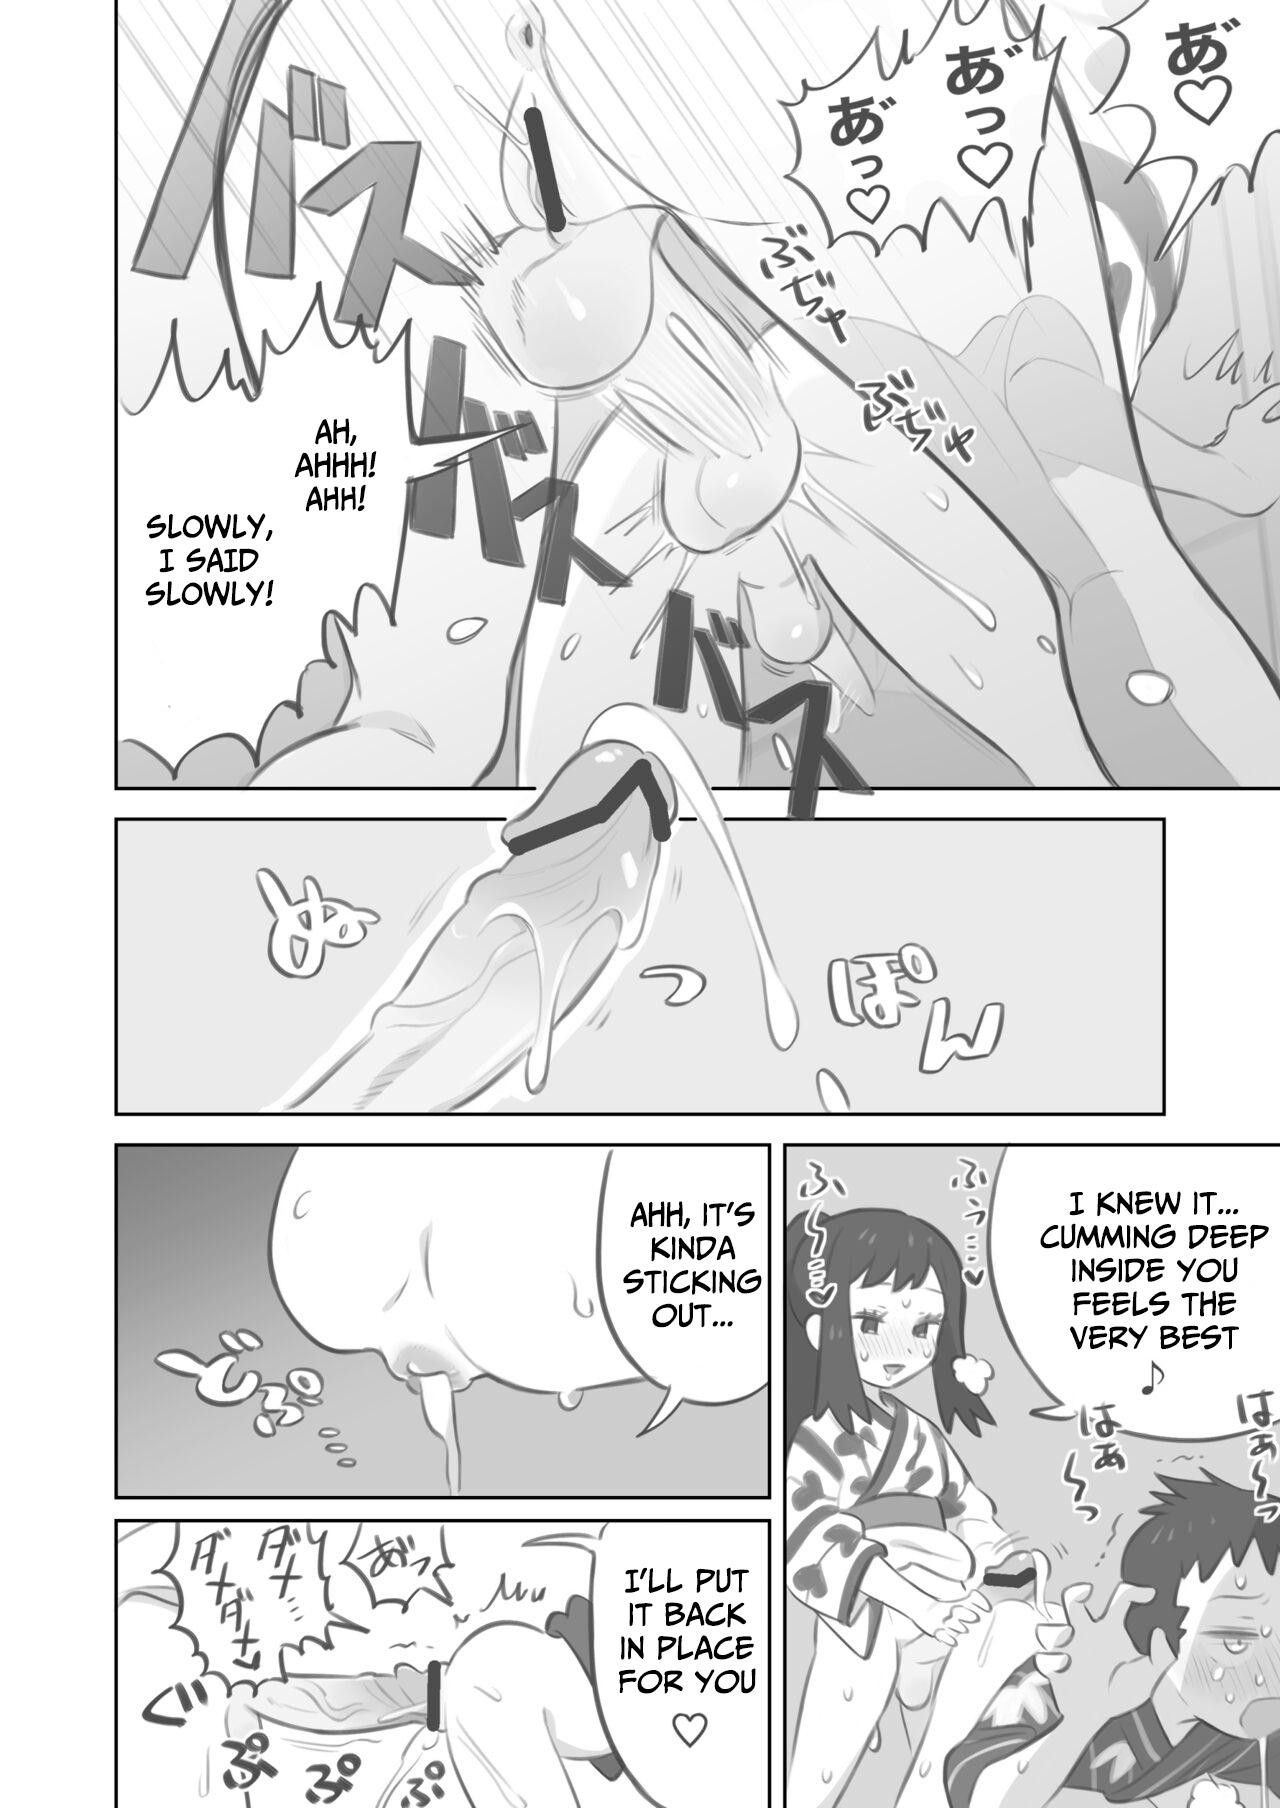 Hidden Camera Futanari shujinkō-chan ga Teru senpai o horu manga 2 - Pokemon | pocket monsters Dorm - Page 10